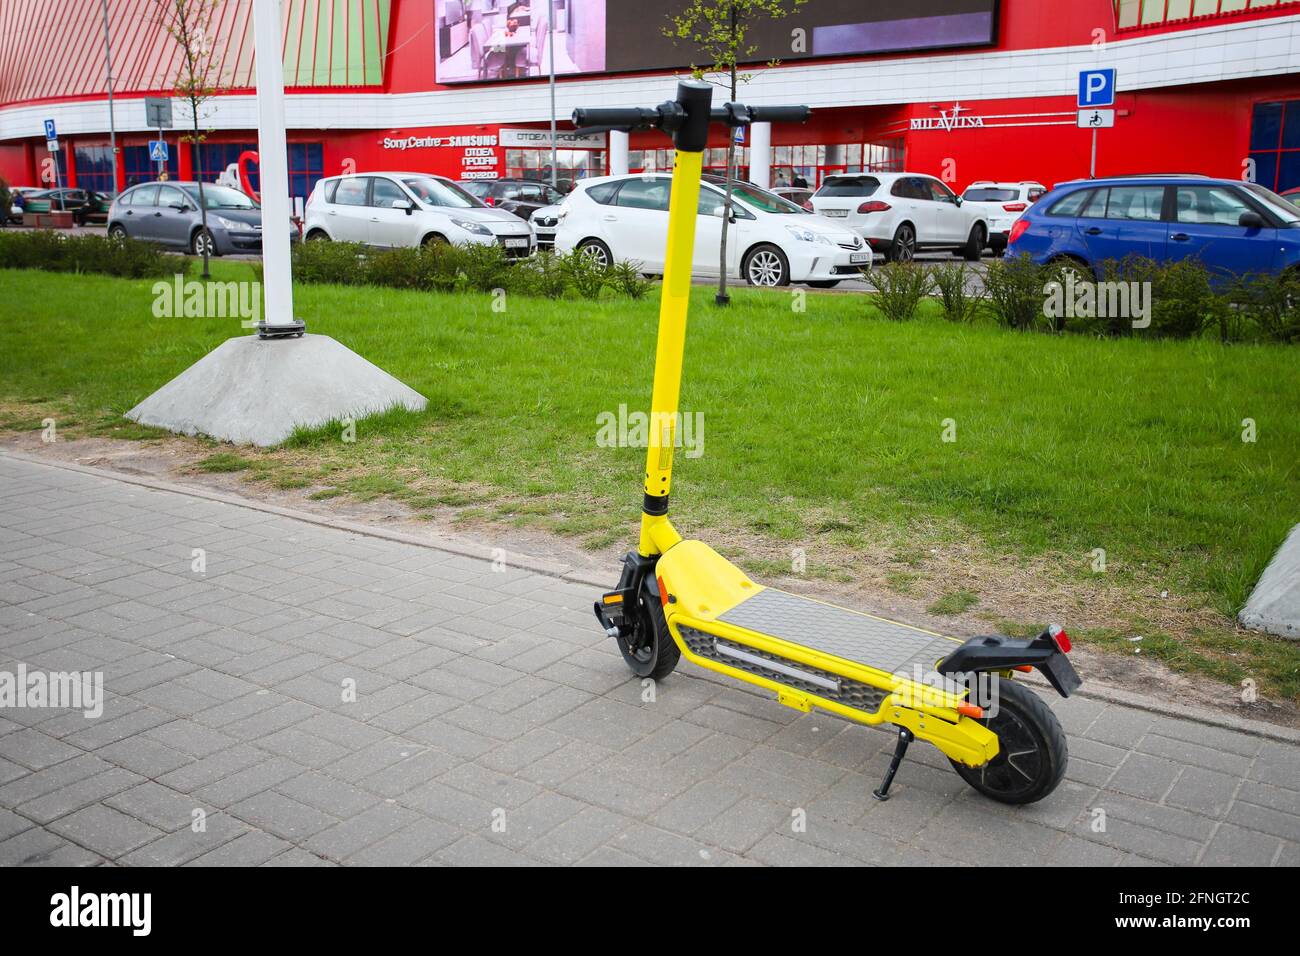 Minsk. BIELORRUSIA - MAYO 2021: Scooter eléctrico amarillo, alquiler de scooter en la ciudad. El scooter está frente a un centro comercial. Foto de stock